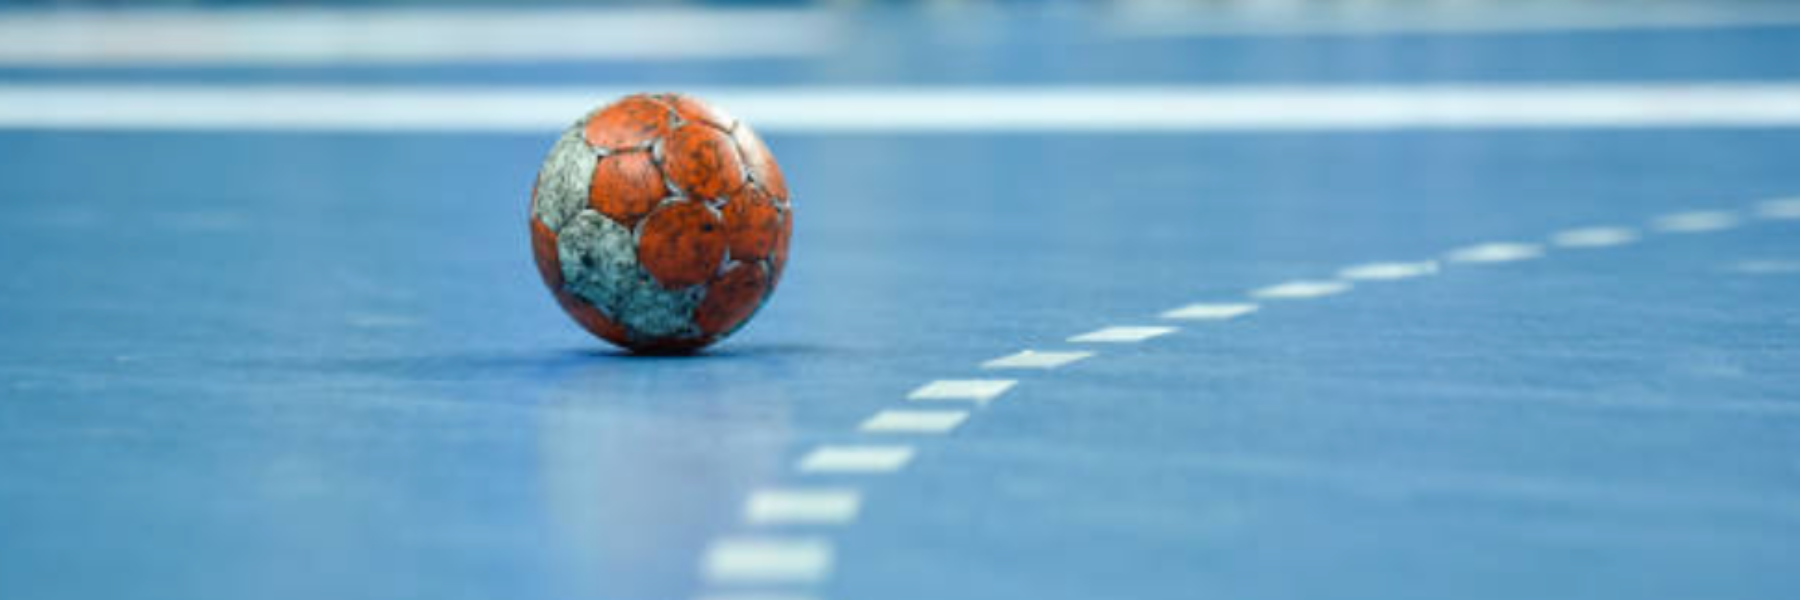 Vi ses Sprede vedvarende ressource Håndbold – Ama'r Sport